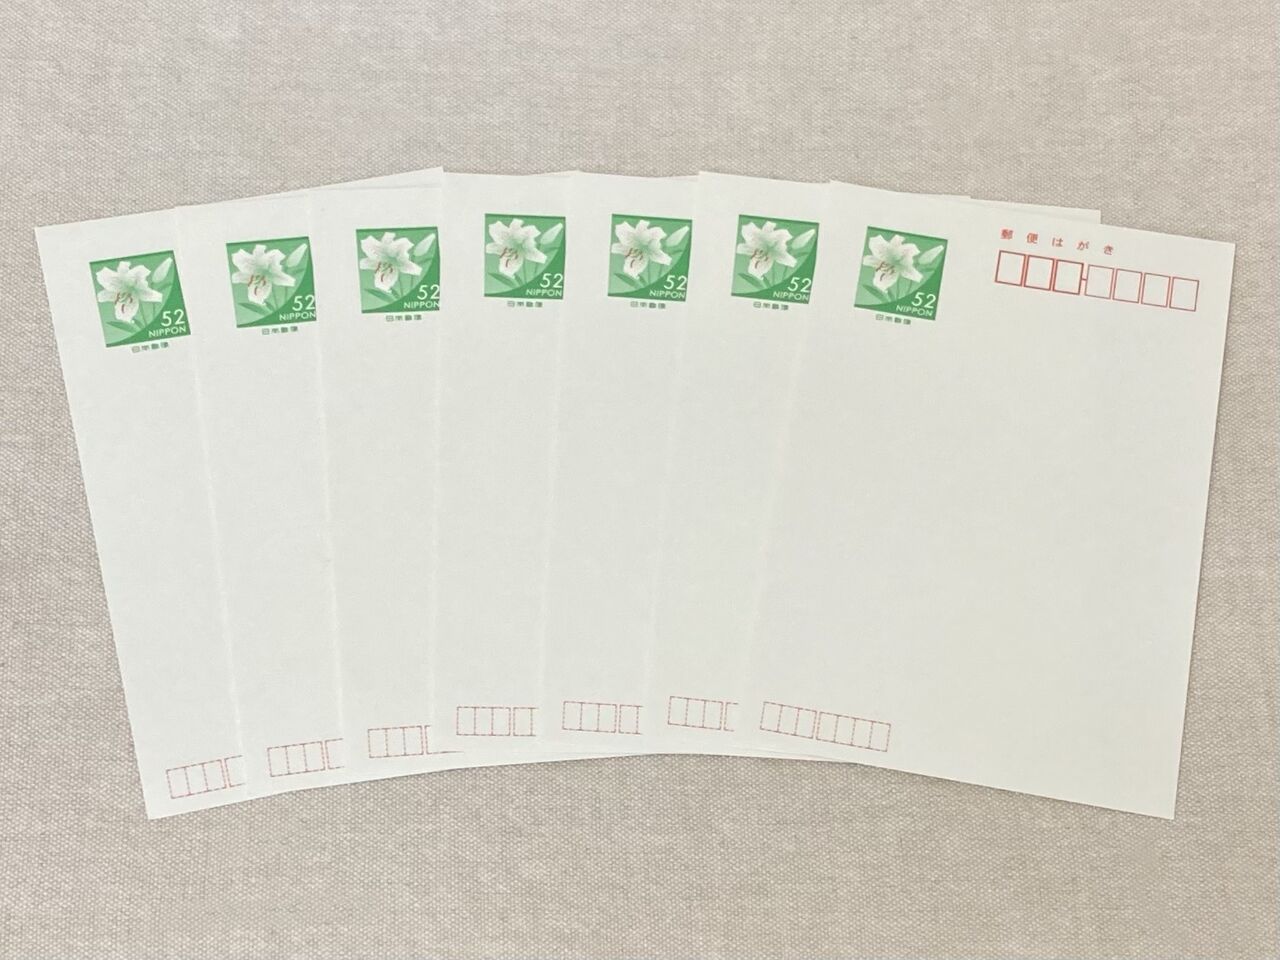 52円年賀ハガキ - 使用済切手